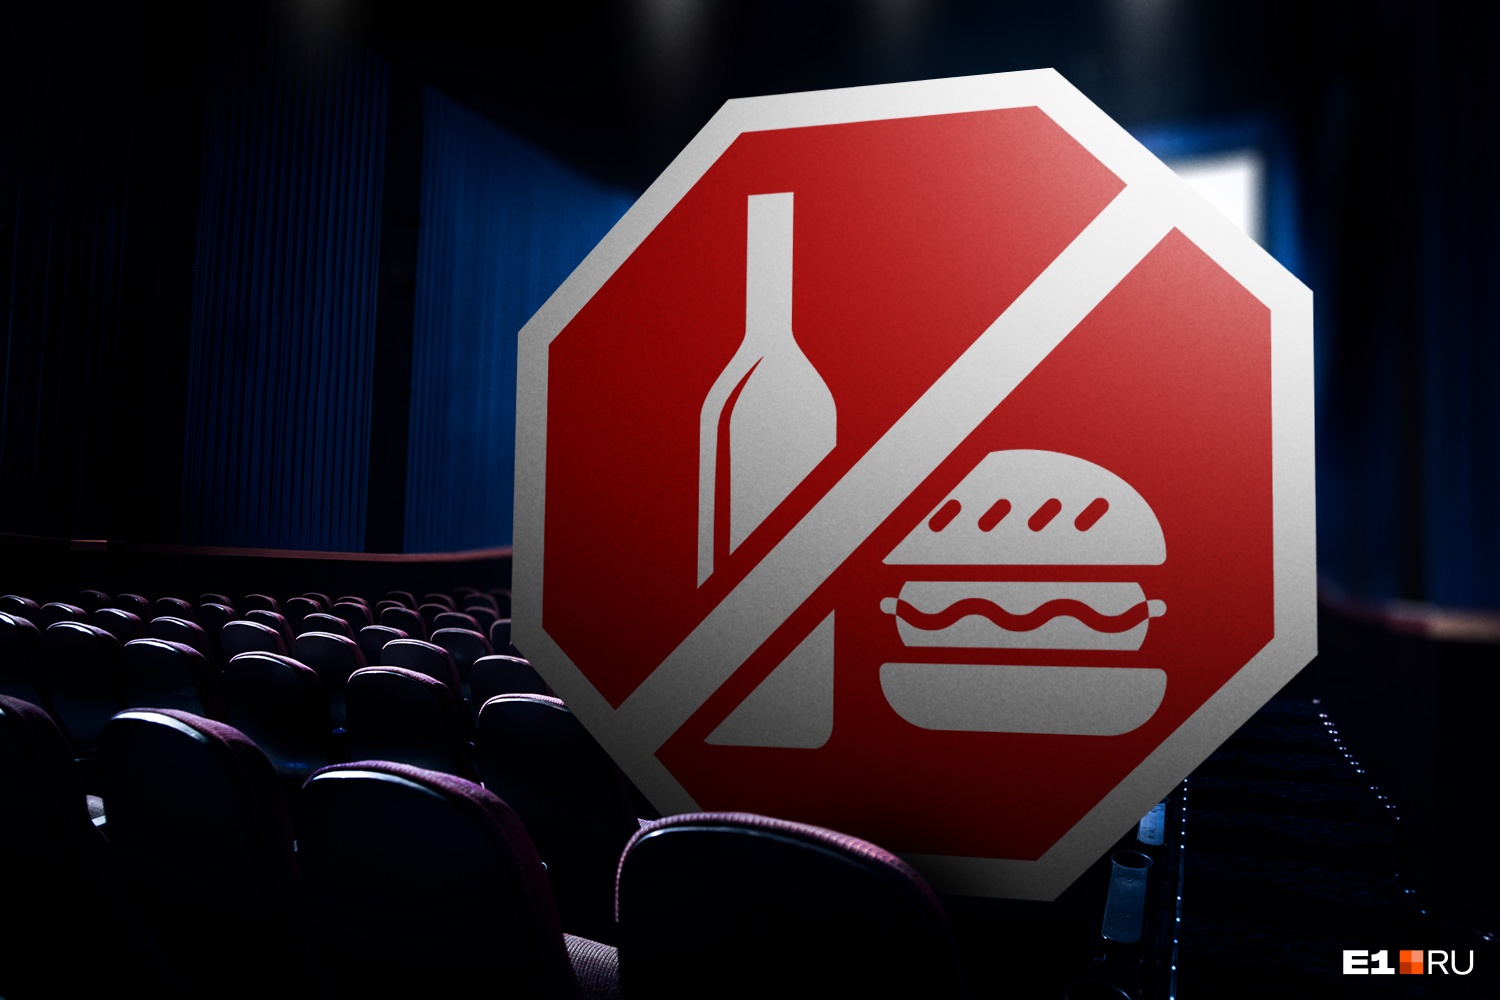 Екатеринбургские кинотеатры запретят приходить в зал со своими едой и напитками. Разбираемся зачем и когда